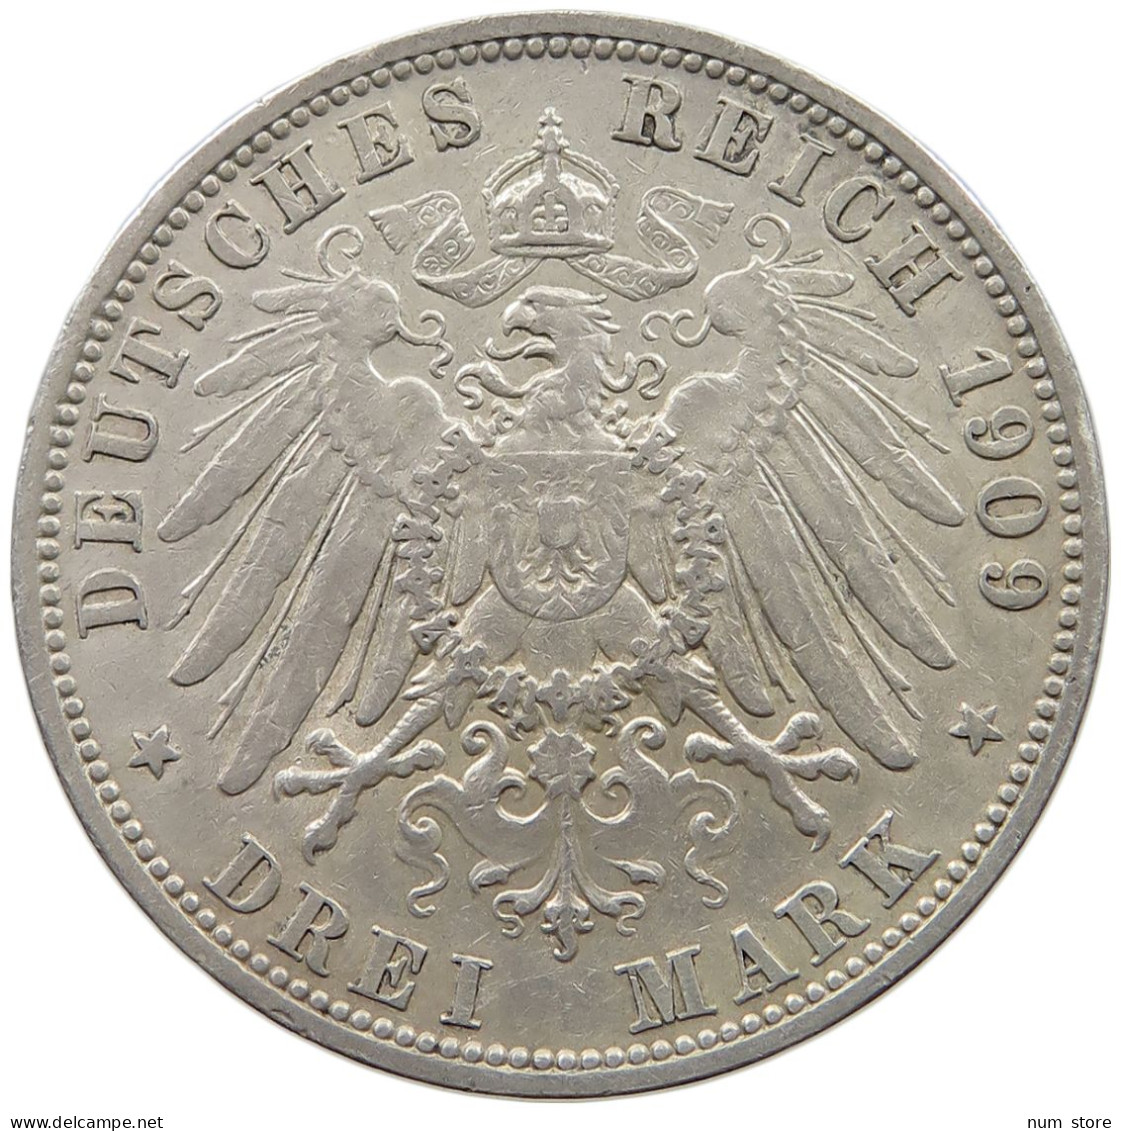 PREUSSEN 3 MARK 1909 WILHELM II. 1888-1918. #MA 020858 - 2, 3 & 5 Mark Silber